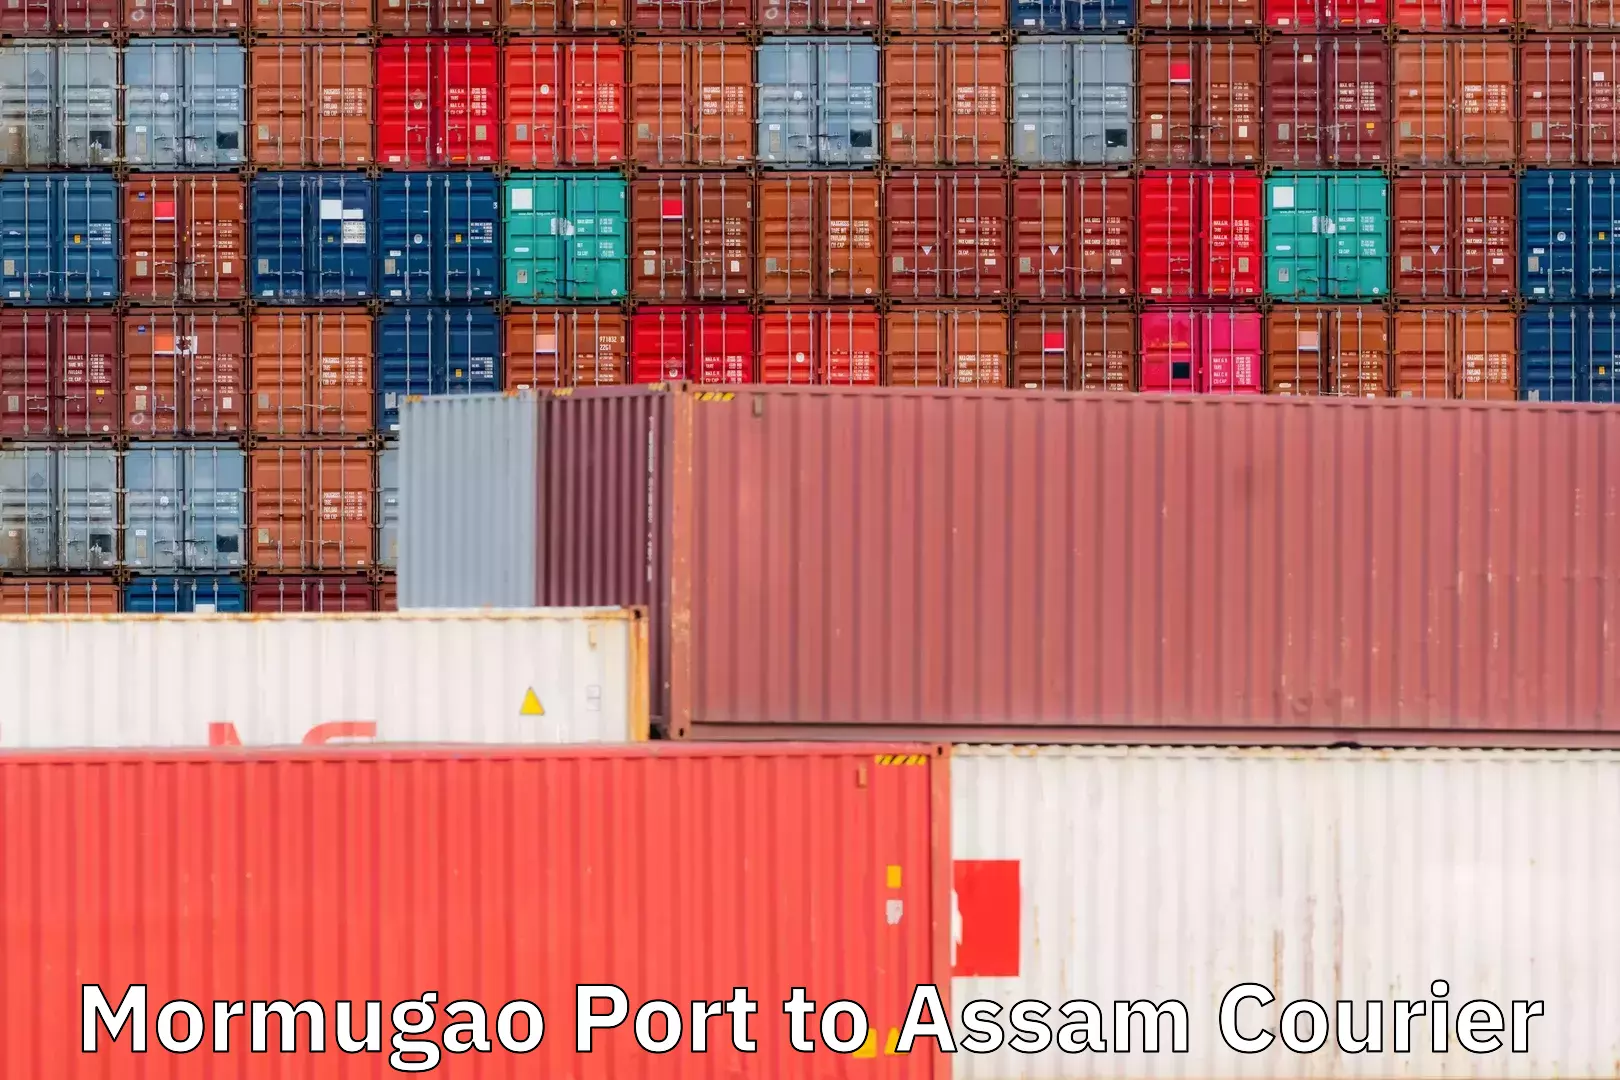 Local courier options Mormugao Port to Assam